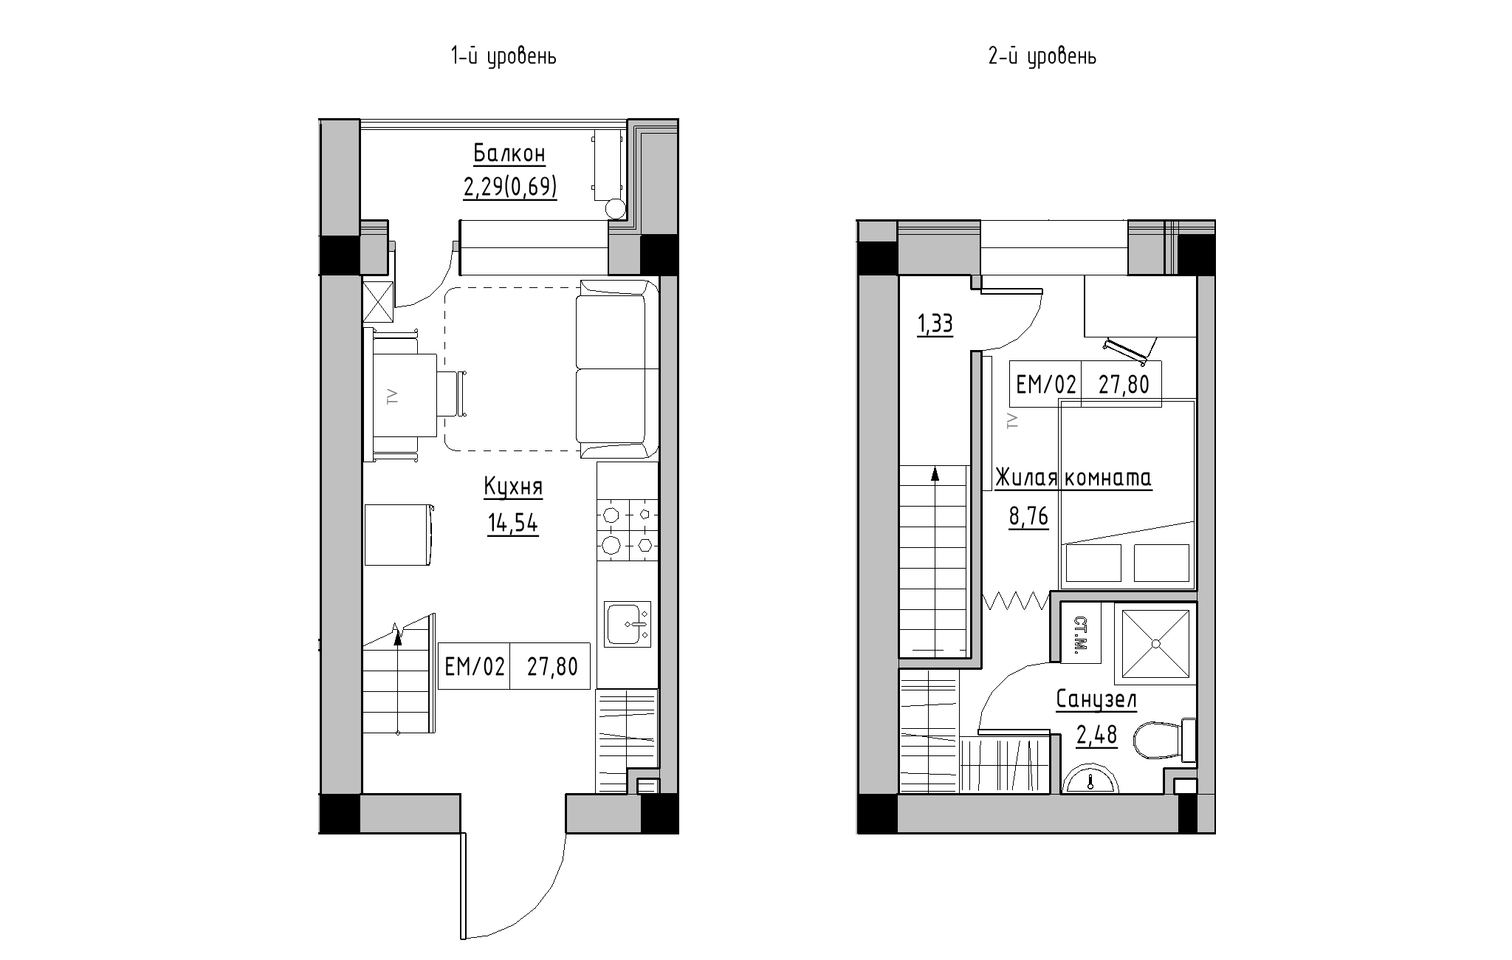 Planning 2-lvl flats area 27.8m2, KS-013-05/0007.